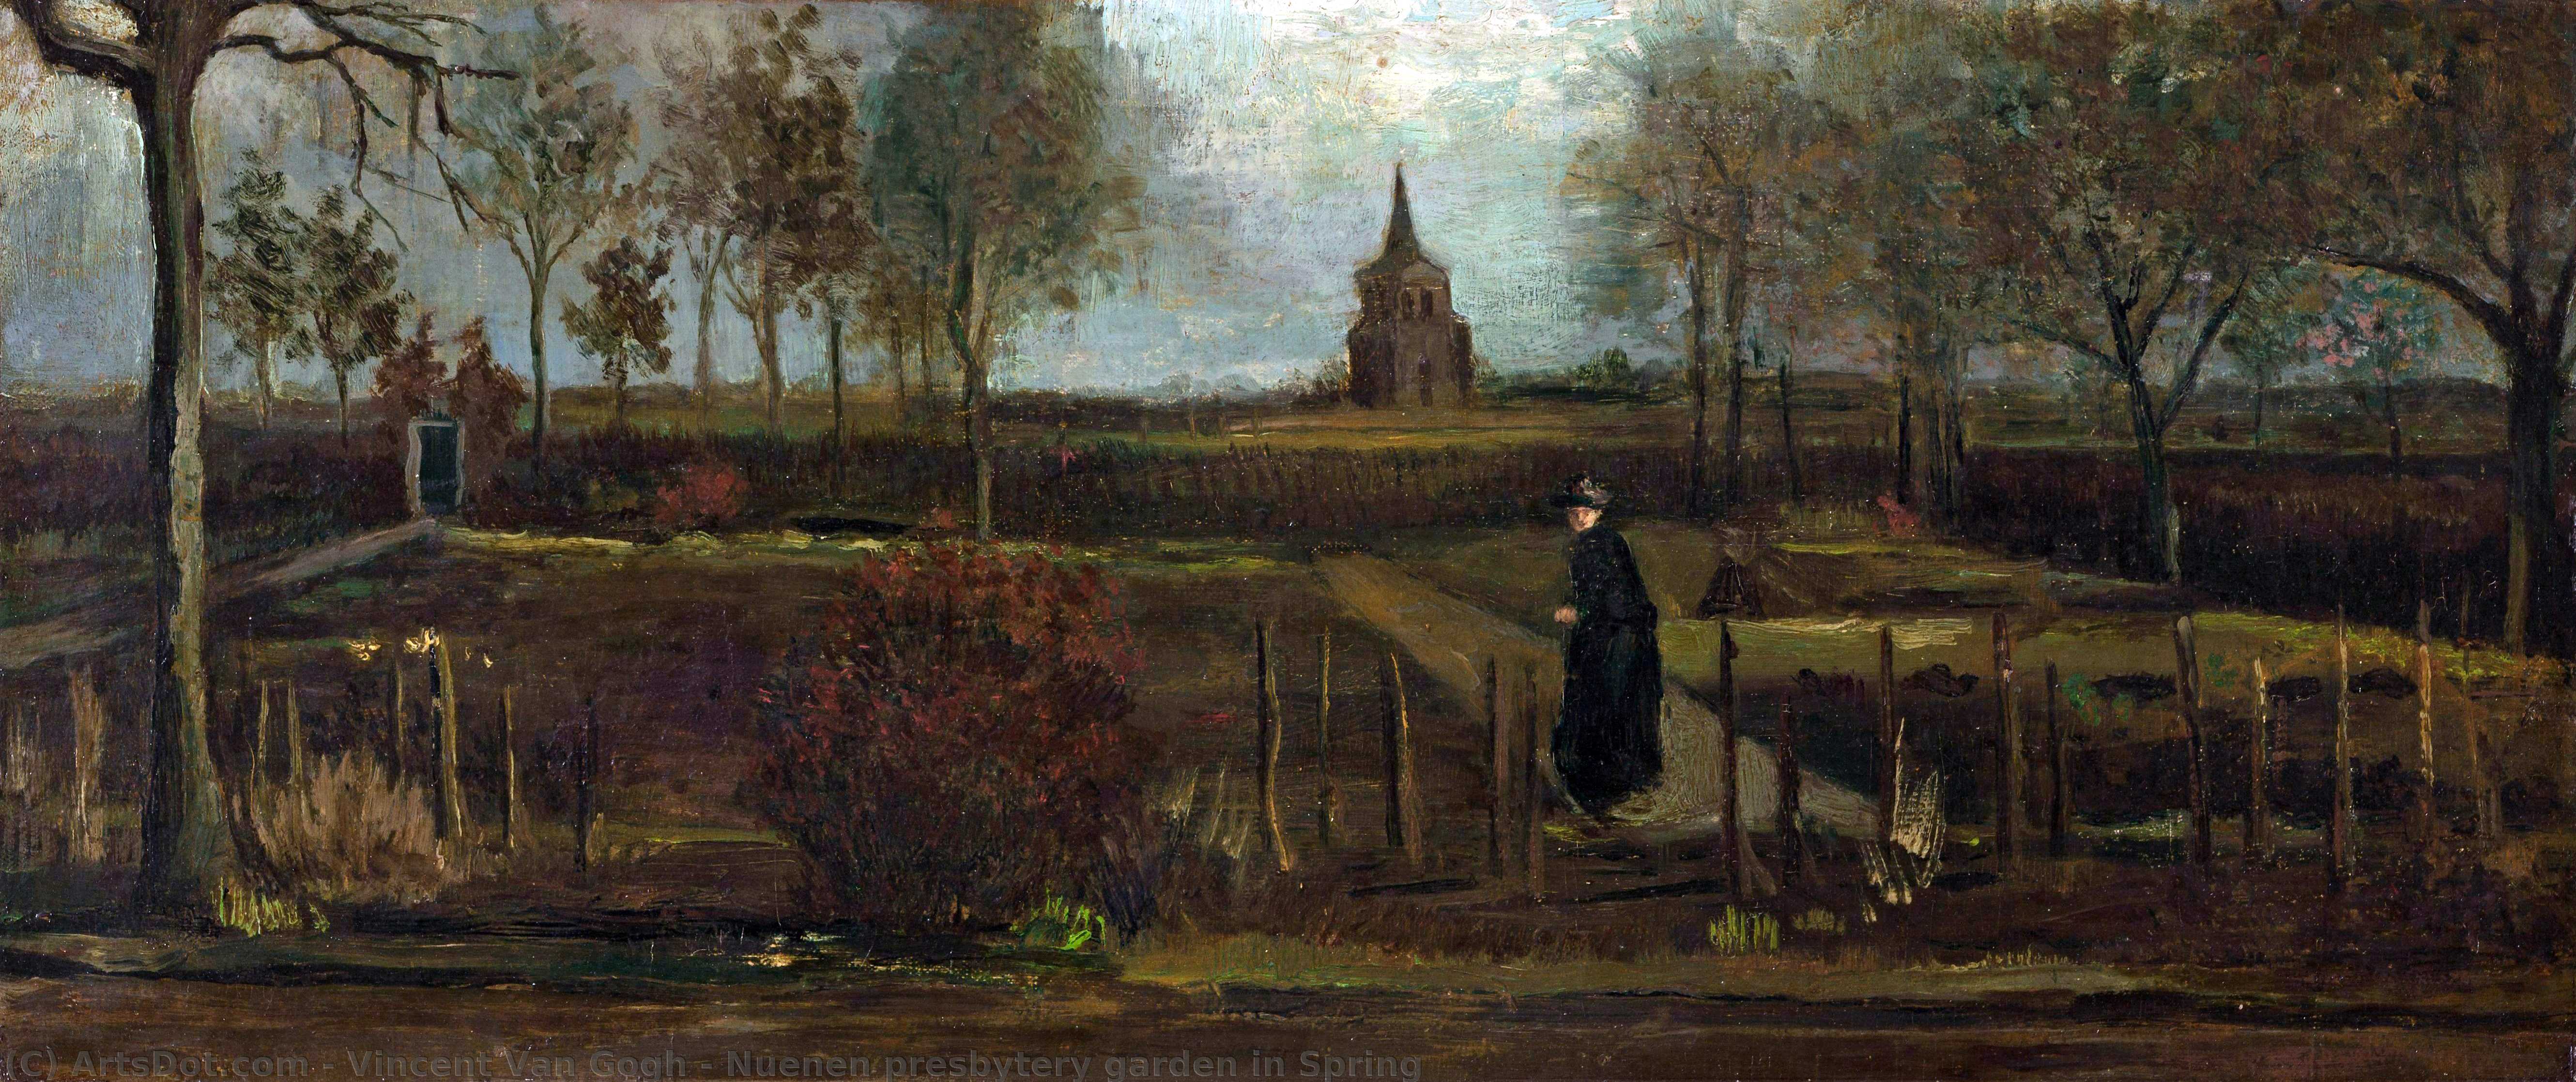 WikiOO.org - دایره المعارف هنرهای زیبا - نقاشی، آثار هنری Vincent Van Gogh - Nuenen presbytery garden in Spring